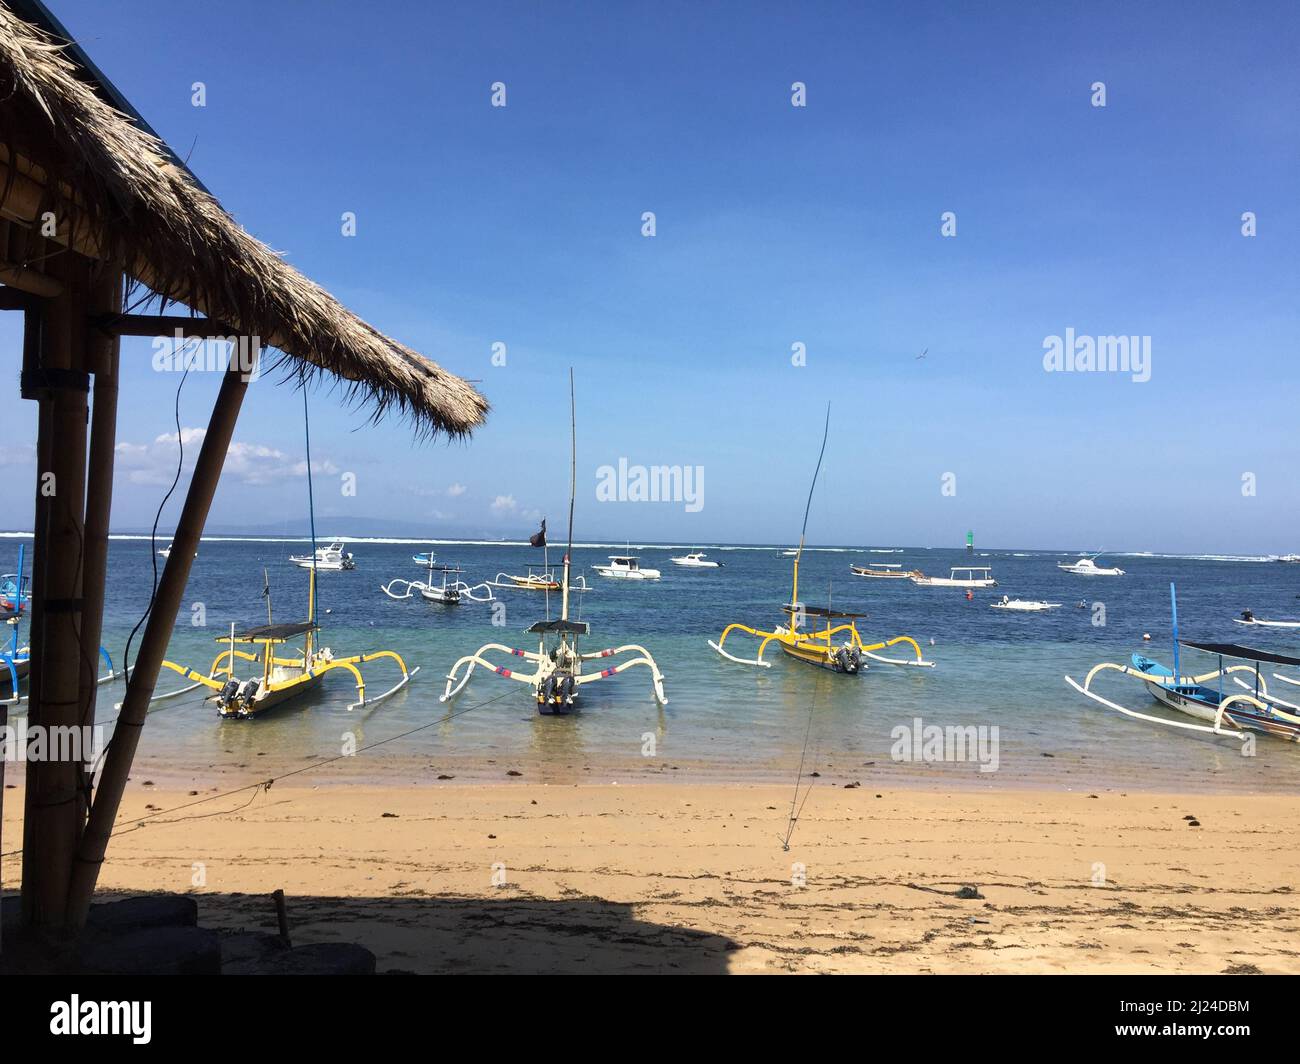 Ubud, Kuta, Sanur, Indonesia. 15th giugno 2019. Barche da pesca sulla spiaggia di Sanur sull'isola indoeuropea di Bali. I turisti sono ancora una volta attratti nel sud-est asiatico. Tuttavia, le regole di ingresso nei vari paesi variano notevolmente. (A dpa: 'Angkor and Co.: What Southeast Asia vacationers need to be aware of Corona') Credit: Carola Frentzen/dpa/Alamy Live News Foto Stock